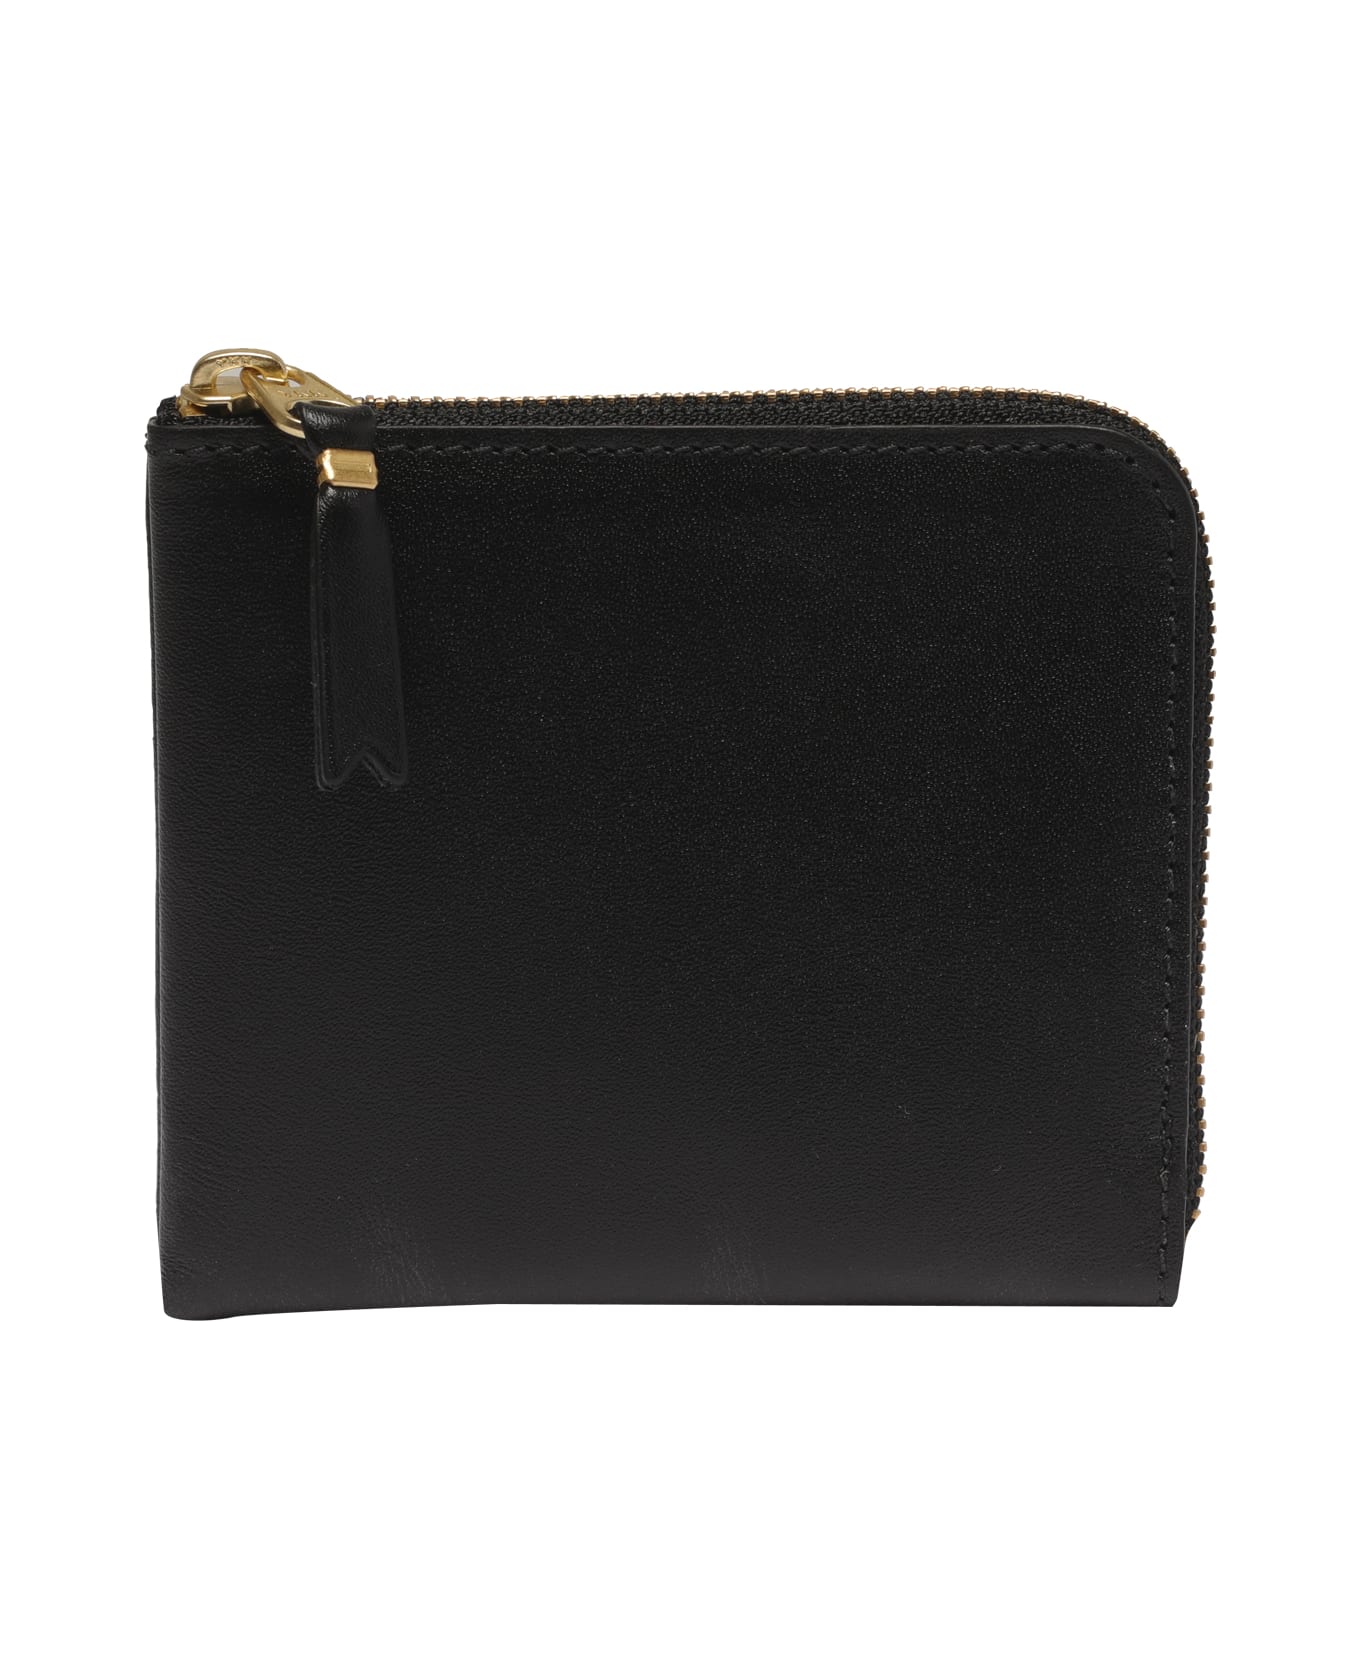 Comme des Garçons Wallet Classic Leather Line Wallet - Black